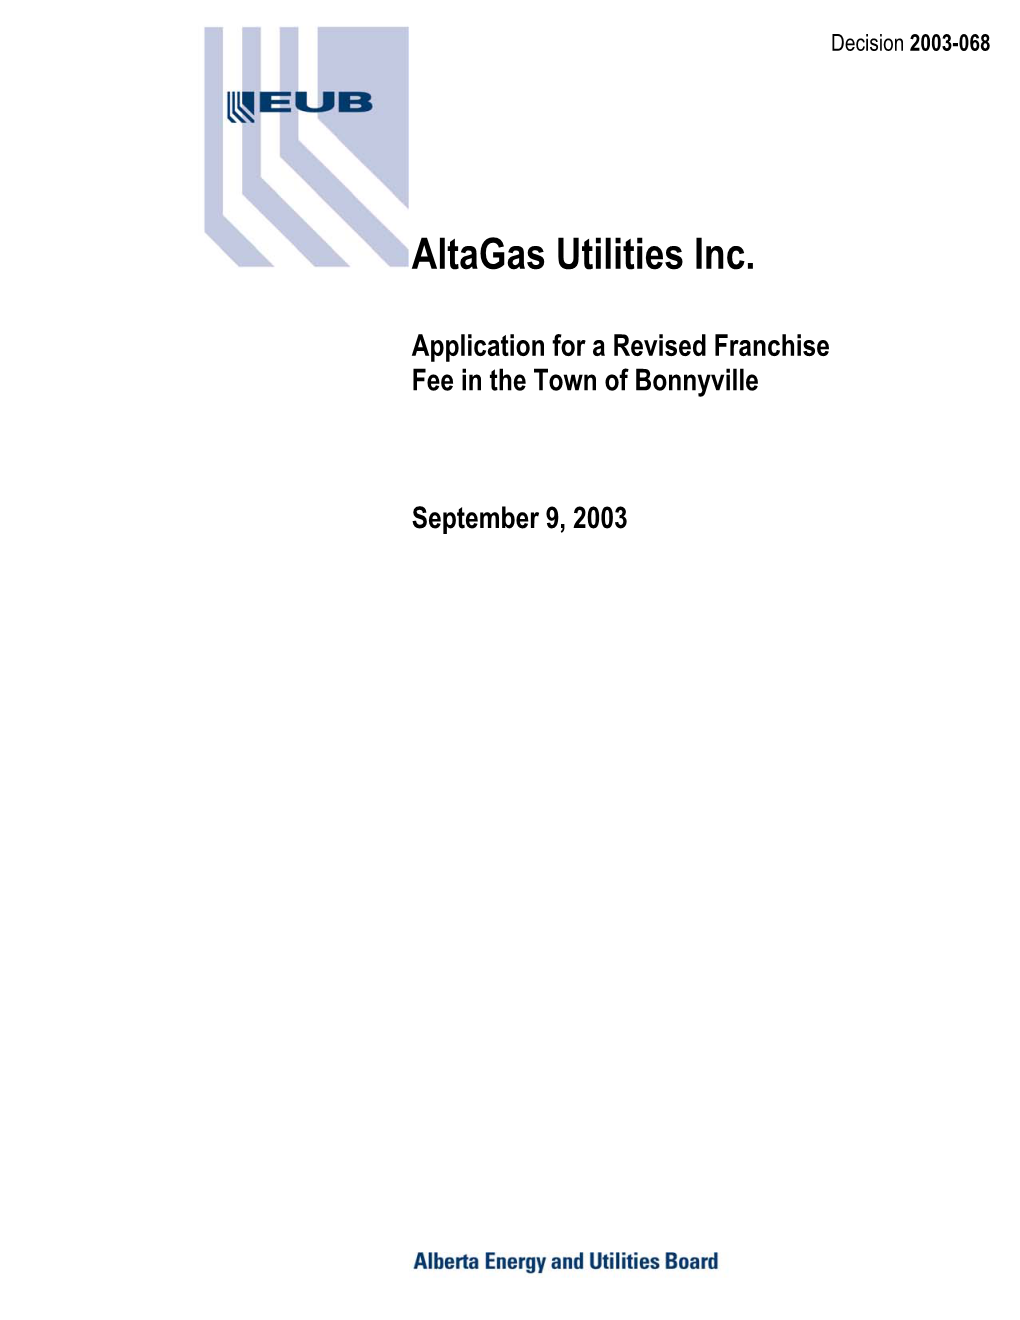 Decision 2003-068: Altagas Utilities Inc